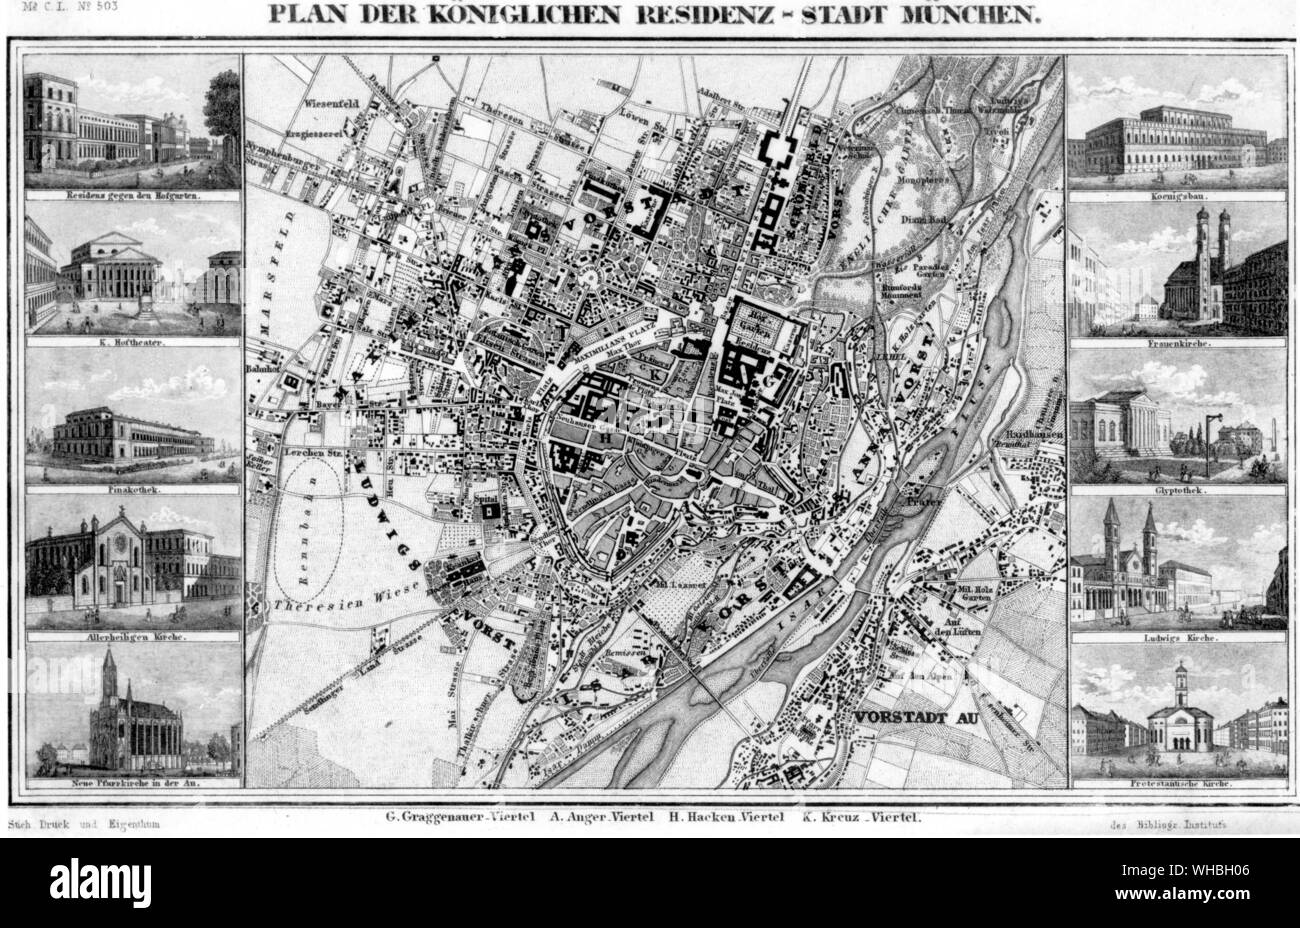 Plan der Koniglichen Residenz-Stadt Munchen. Foto de stock